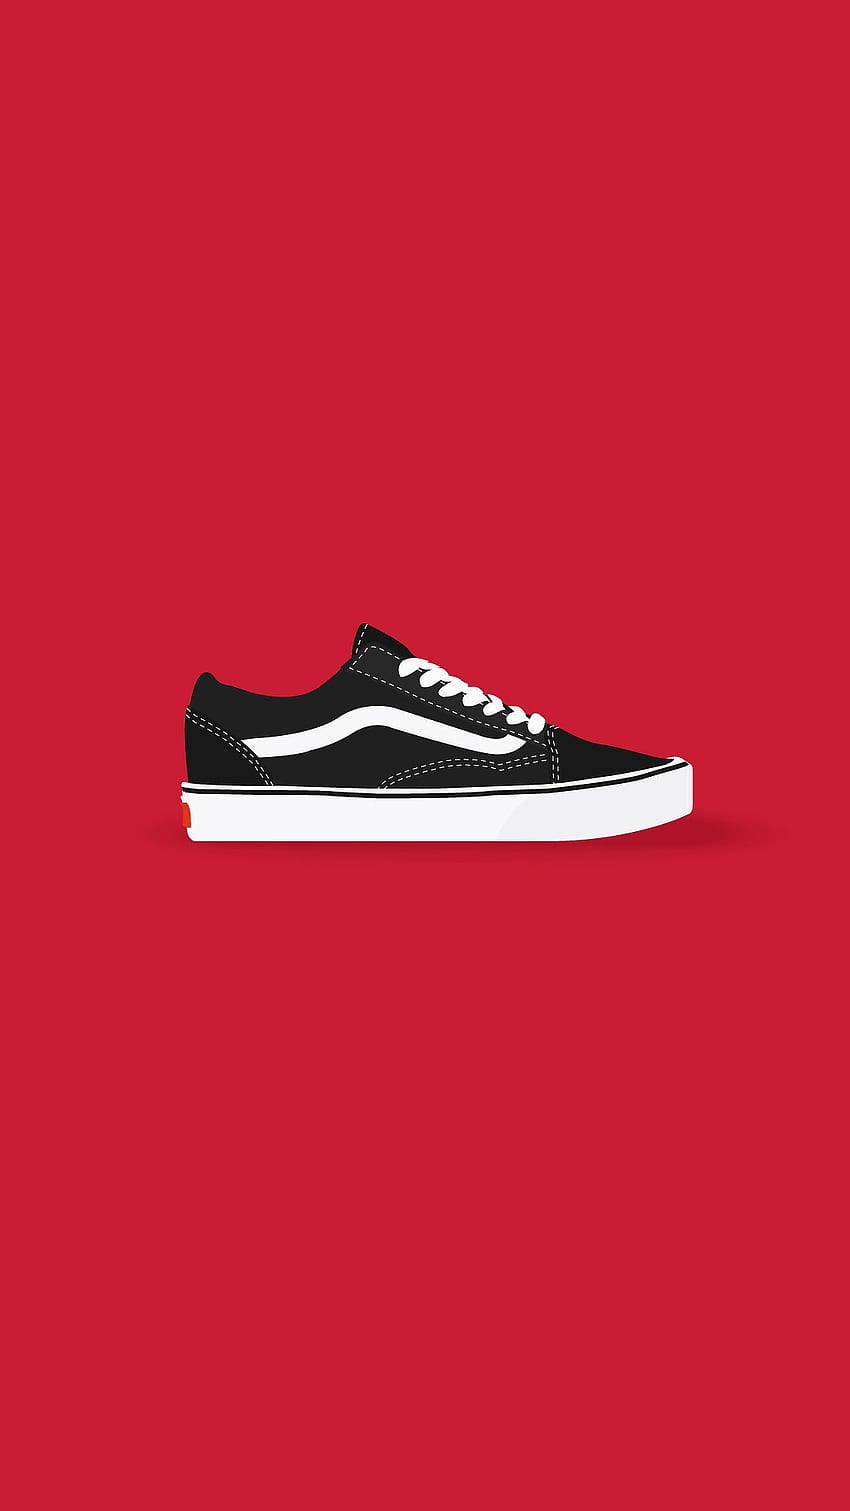 Vans Old Skool in Adobe Illustrator in 2019. Sneakers, Vans Shoes HD phone wallpaper